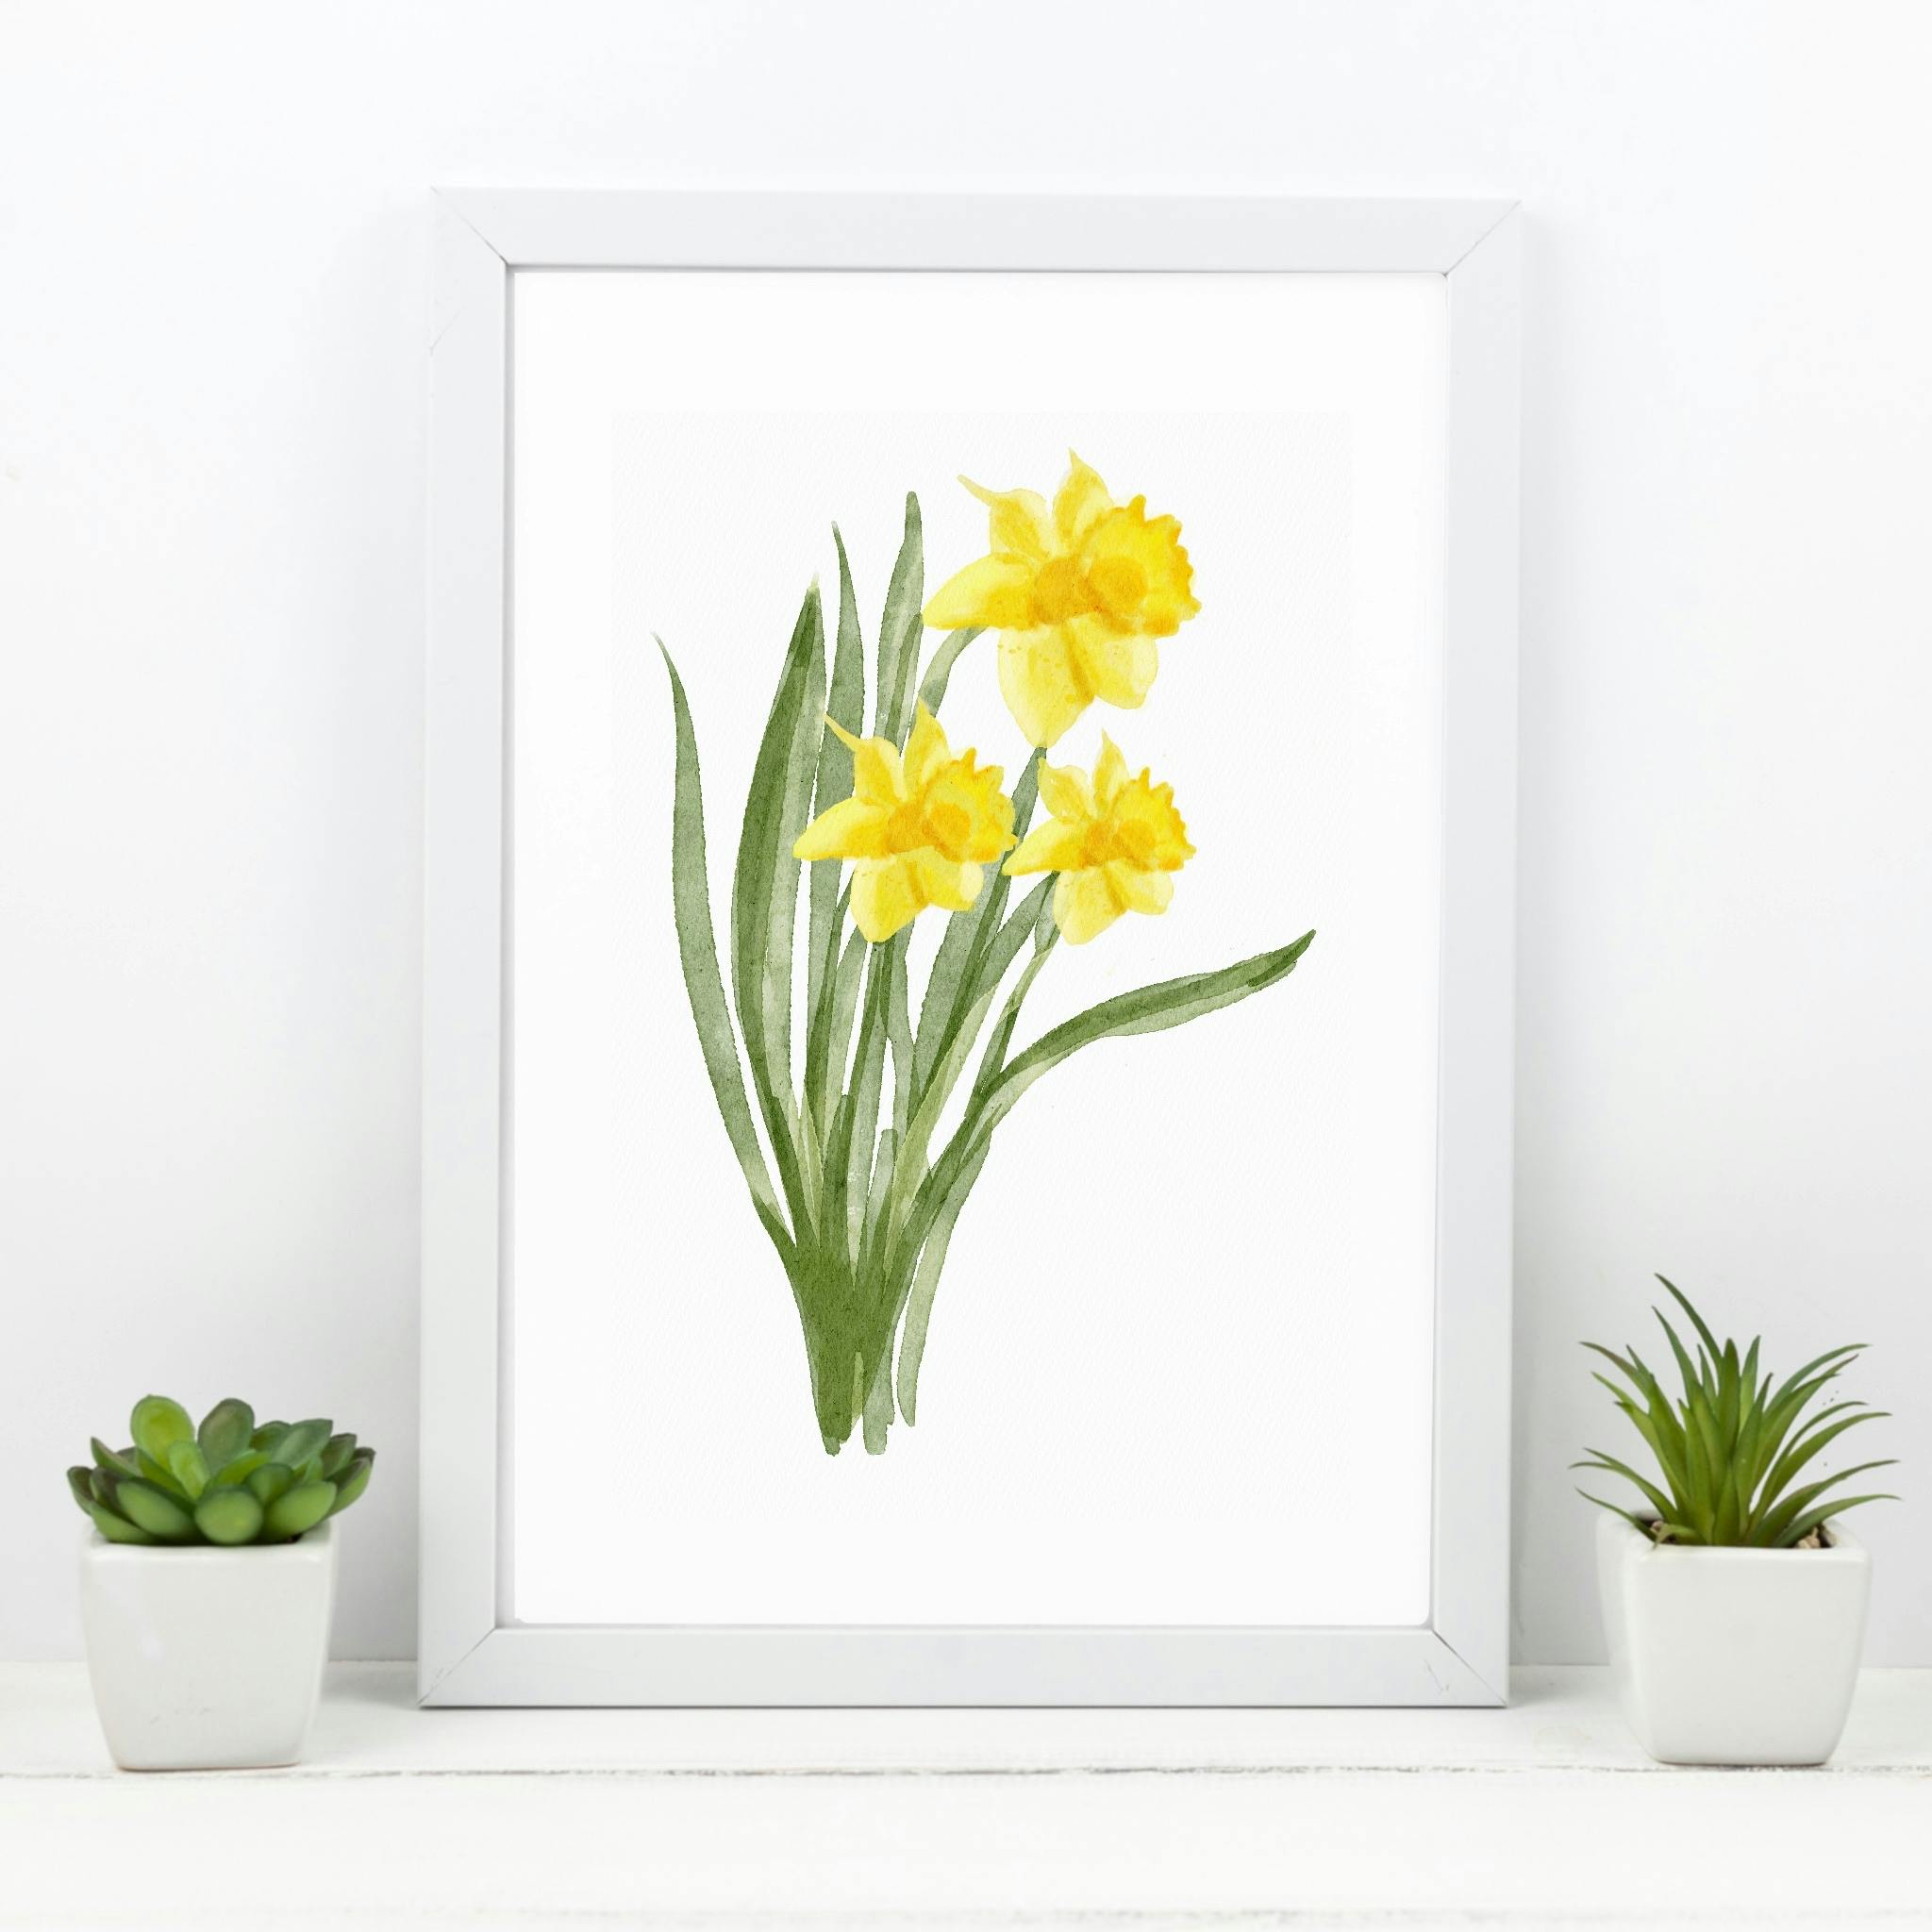 March Birth Flower: Daffodil Art Print 8x10